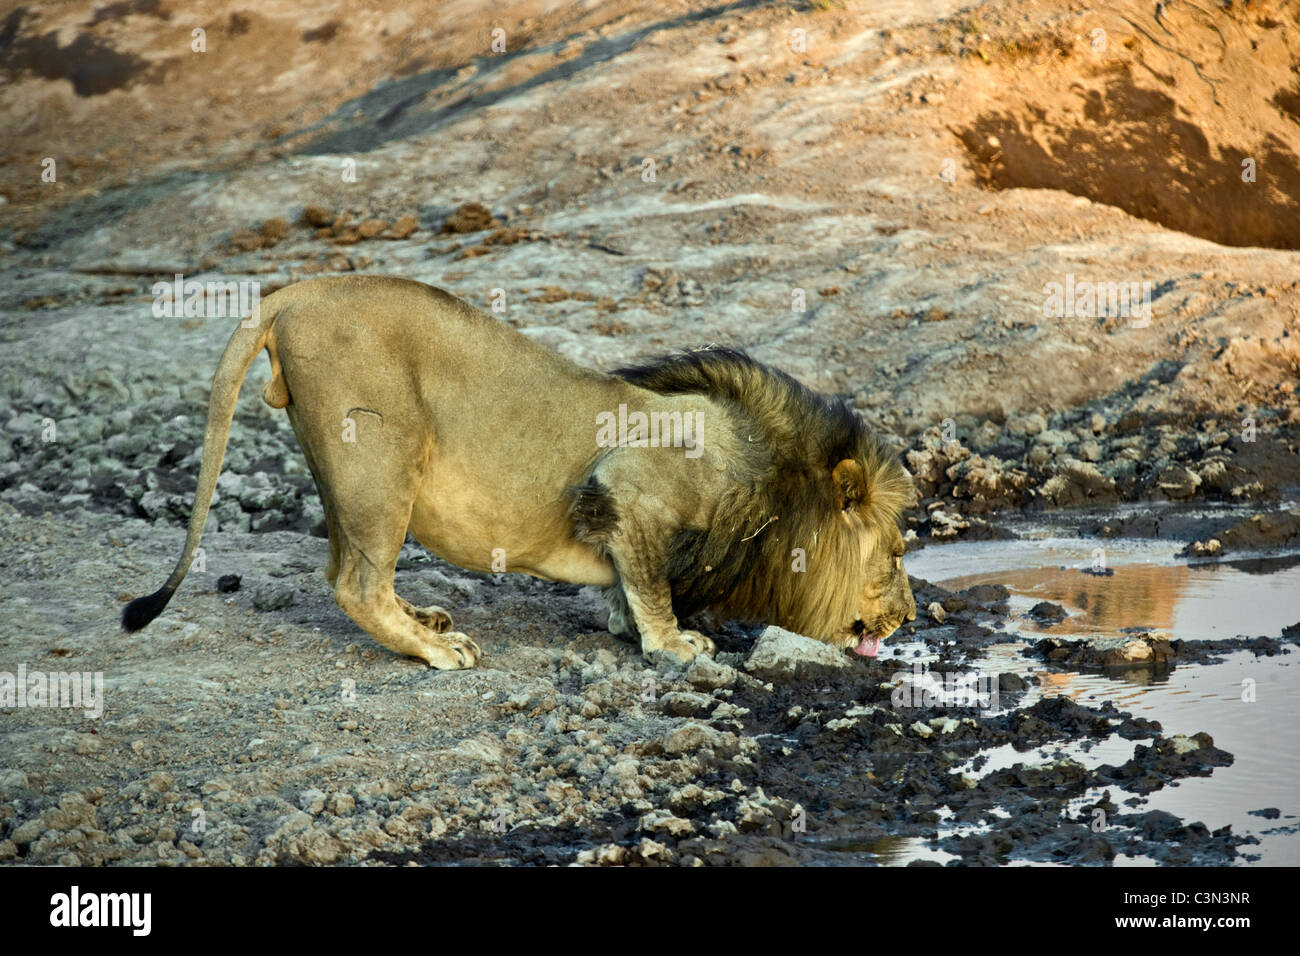 L'Afrique du Sud, près de Zeerust, Pilanesberg National Park . Lion, Panthera leo, boire. Banque D'Images